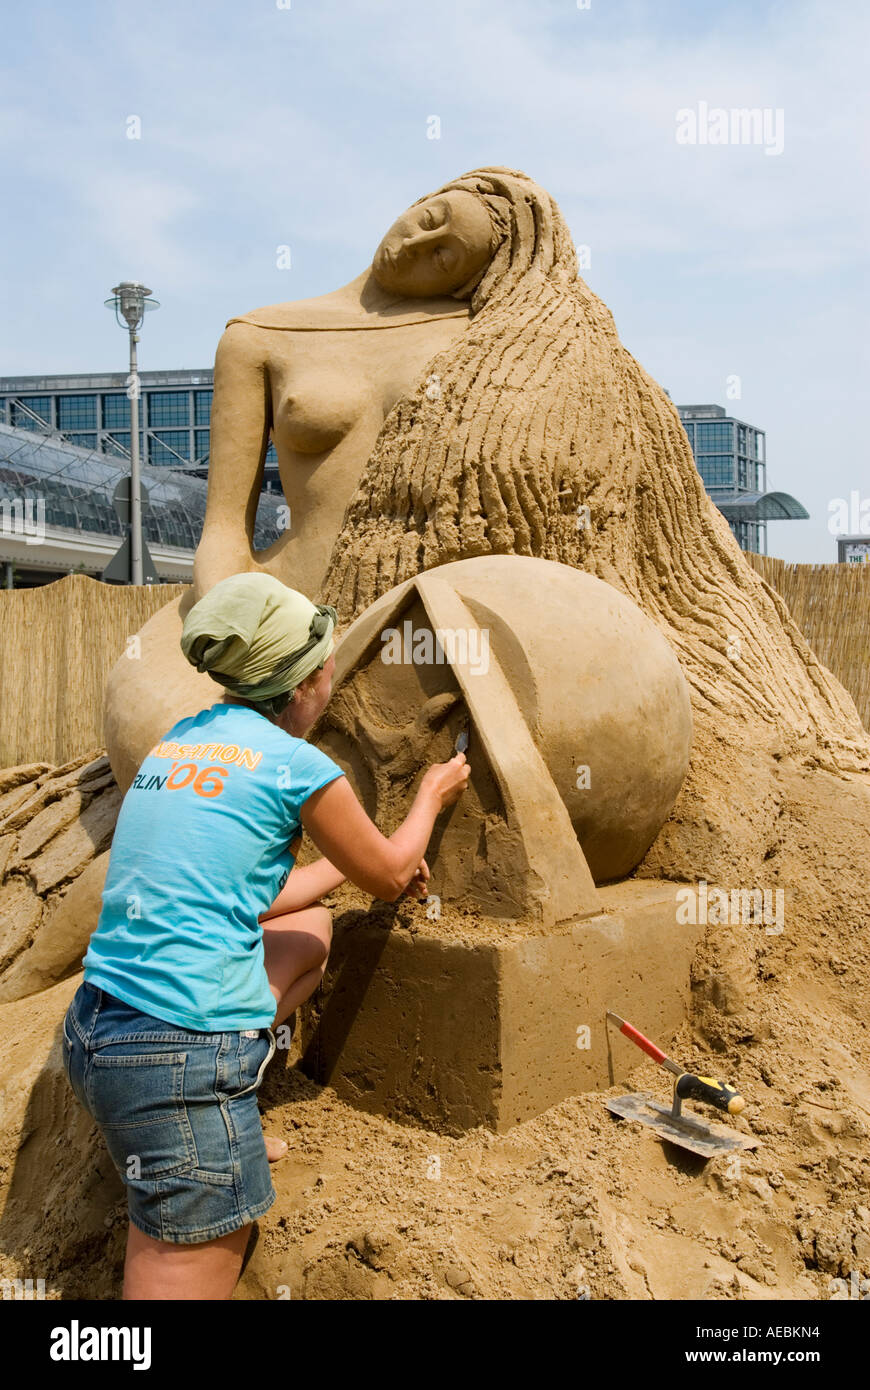 Festival internazionale delle sculture di sabbia tenutasi a Berlino Germania Giugno 2006 Foto Stock